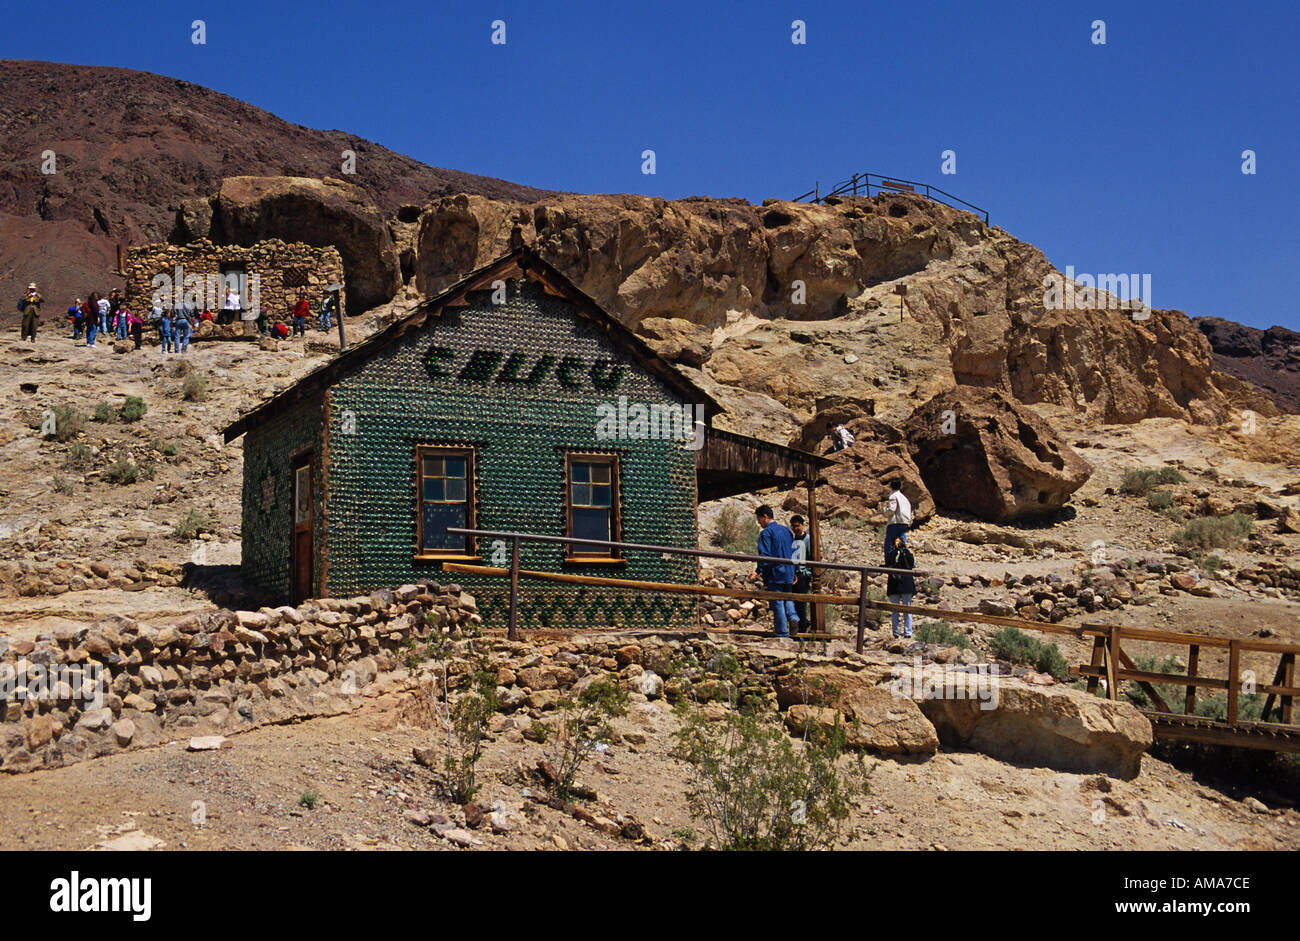 Désert de Mojave en Californie Calico Ghost Town House bouteille touristes asiatiques Banque D'Images